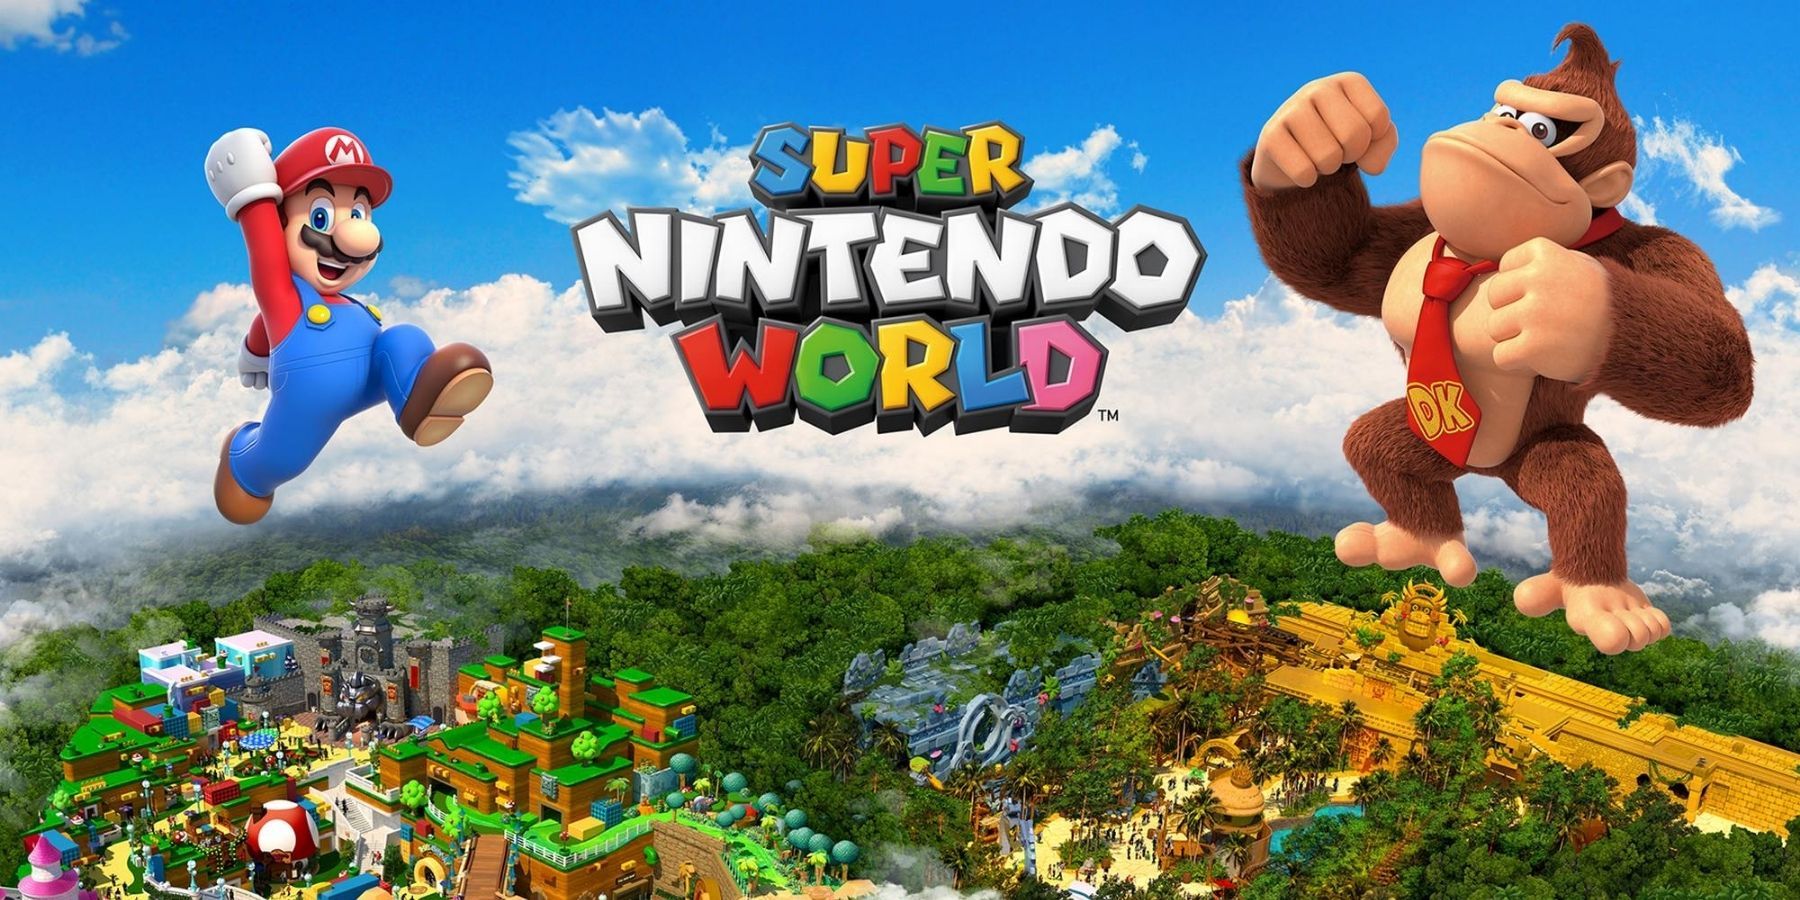 Alla ryktade attraktioner vid Super Nintendo World’s Donkey Kong Expansion